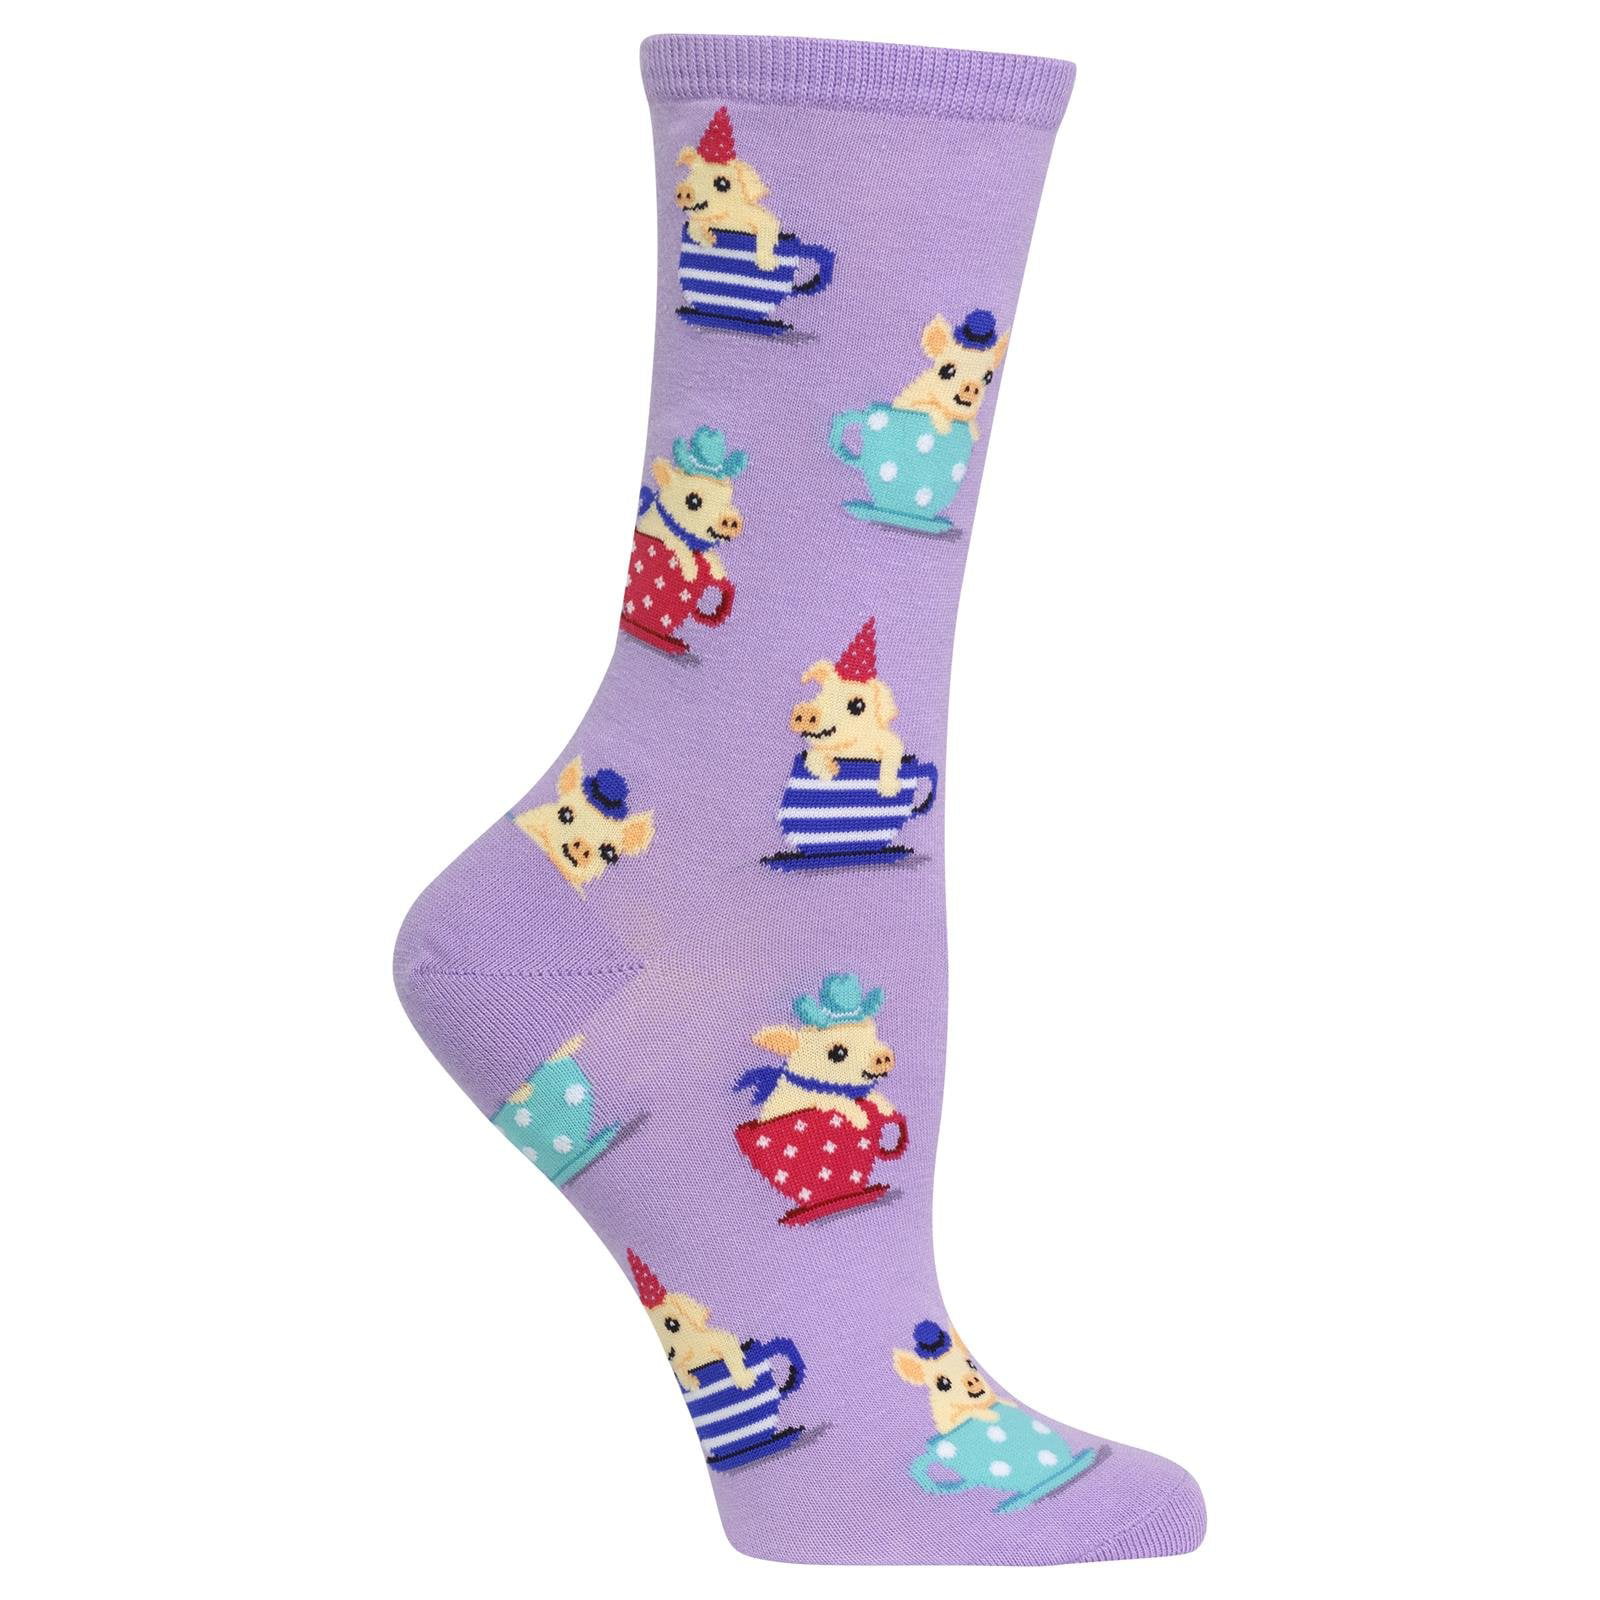 HOT SOX Womens Novelty Socks Rain Boots Galoshes Pink 1 Pair NWT 47852214926 